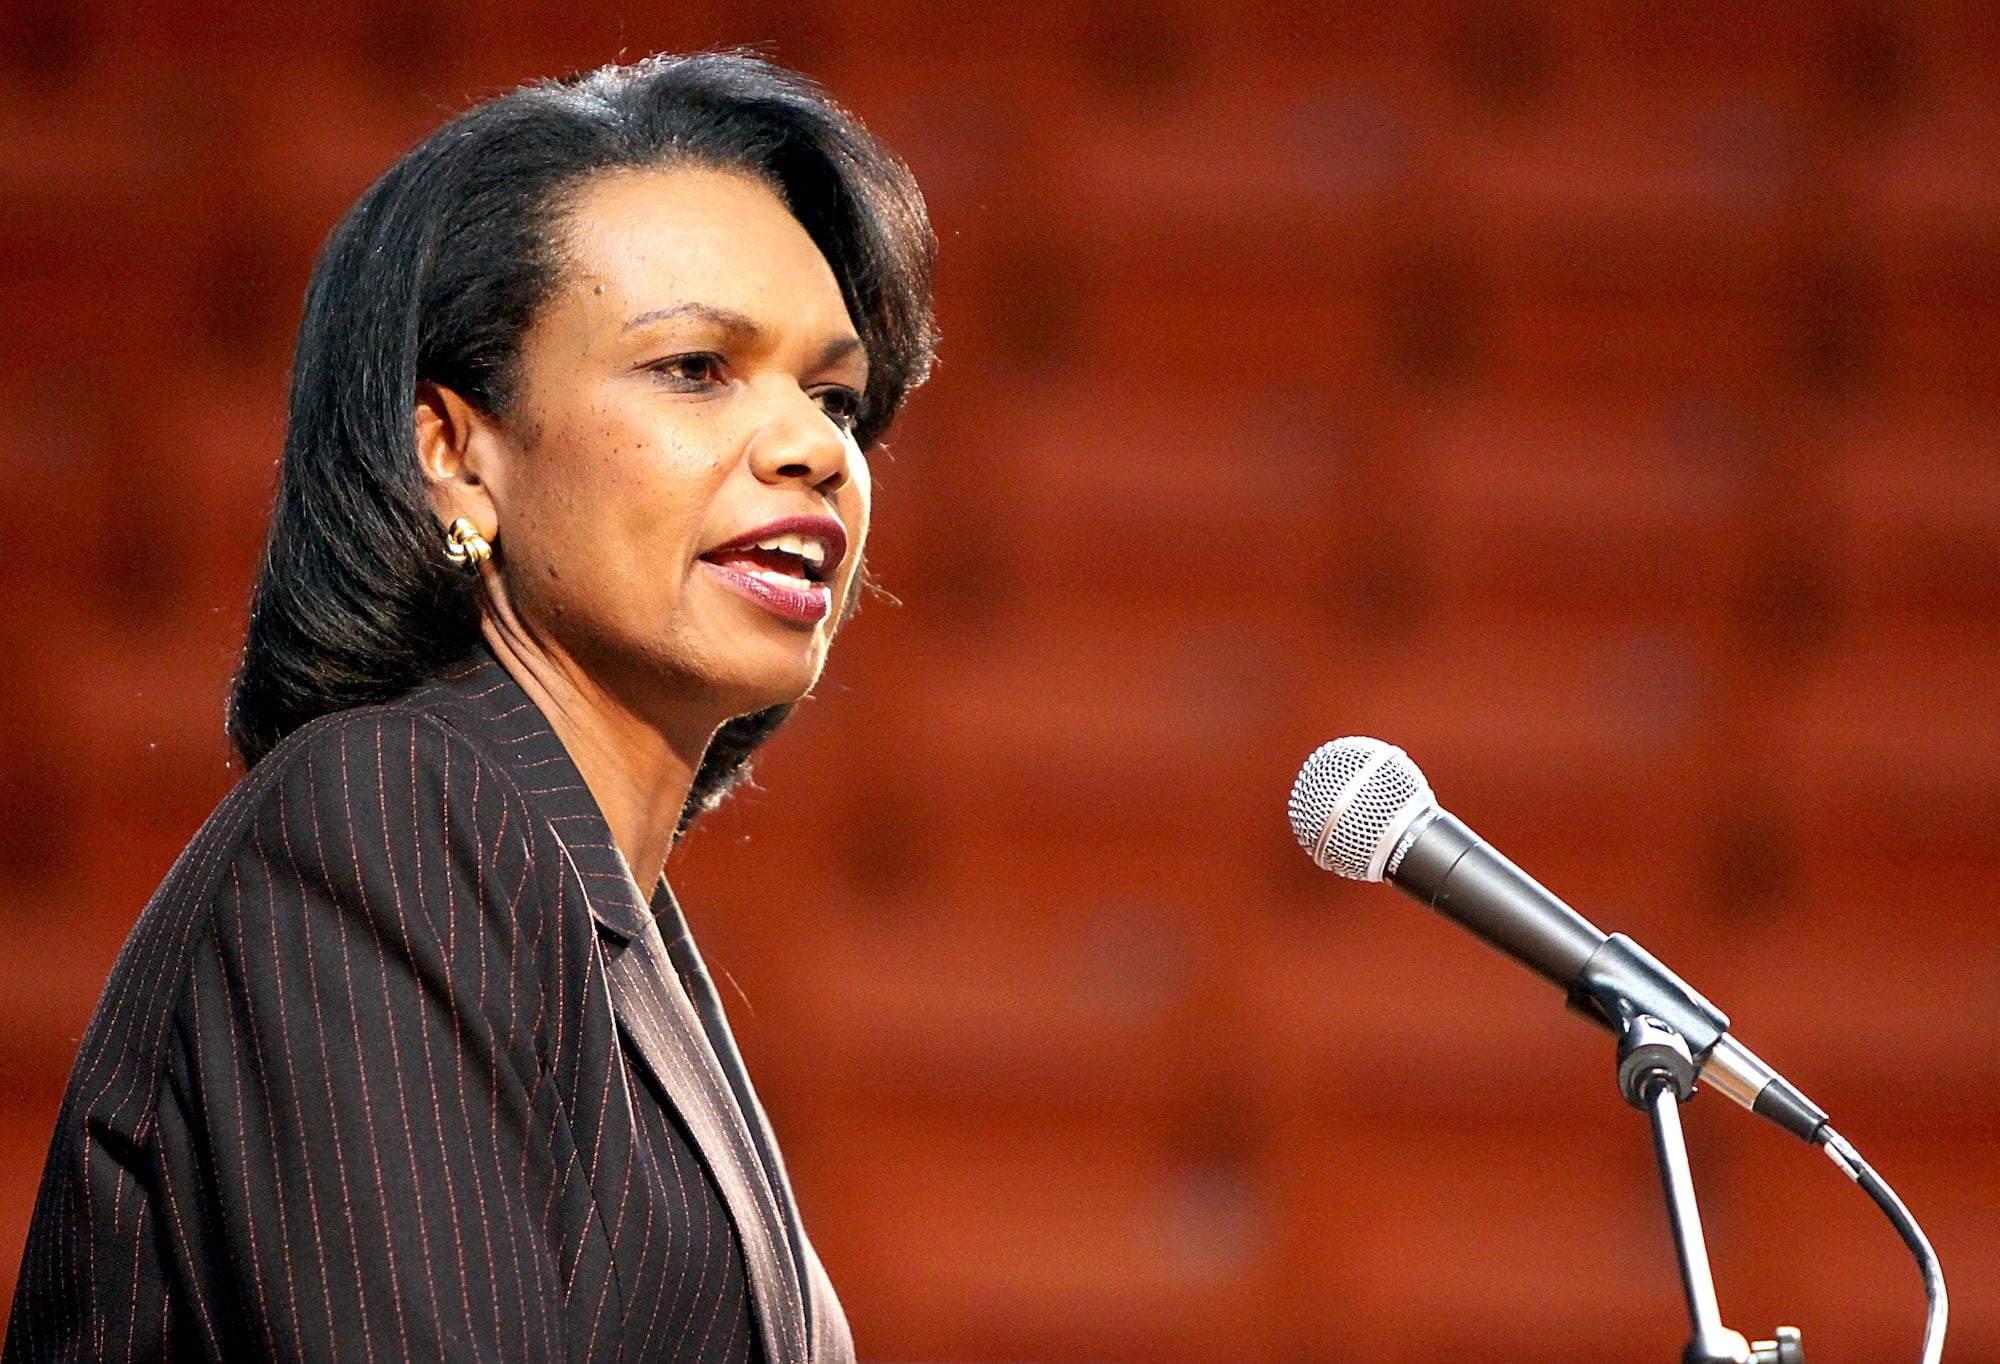 La presencia de Condoleezza Rice en Dropbox es clave para Snowden en su desconfianza con el servicio de almacenamiento.